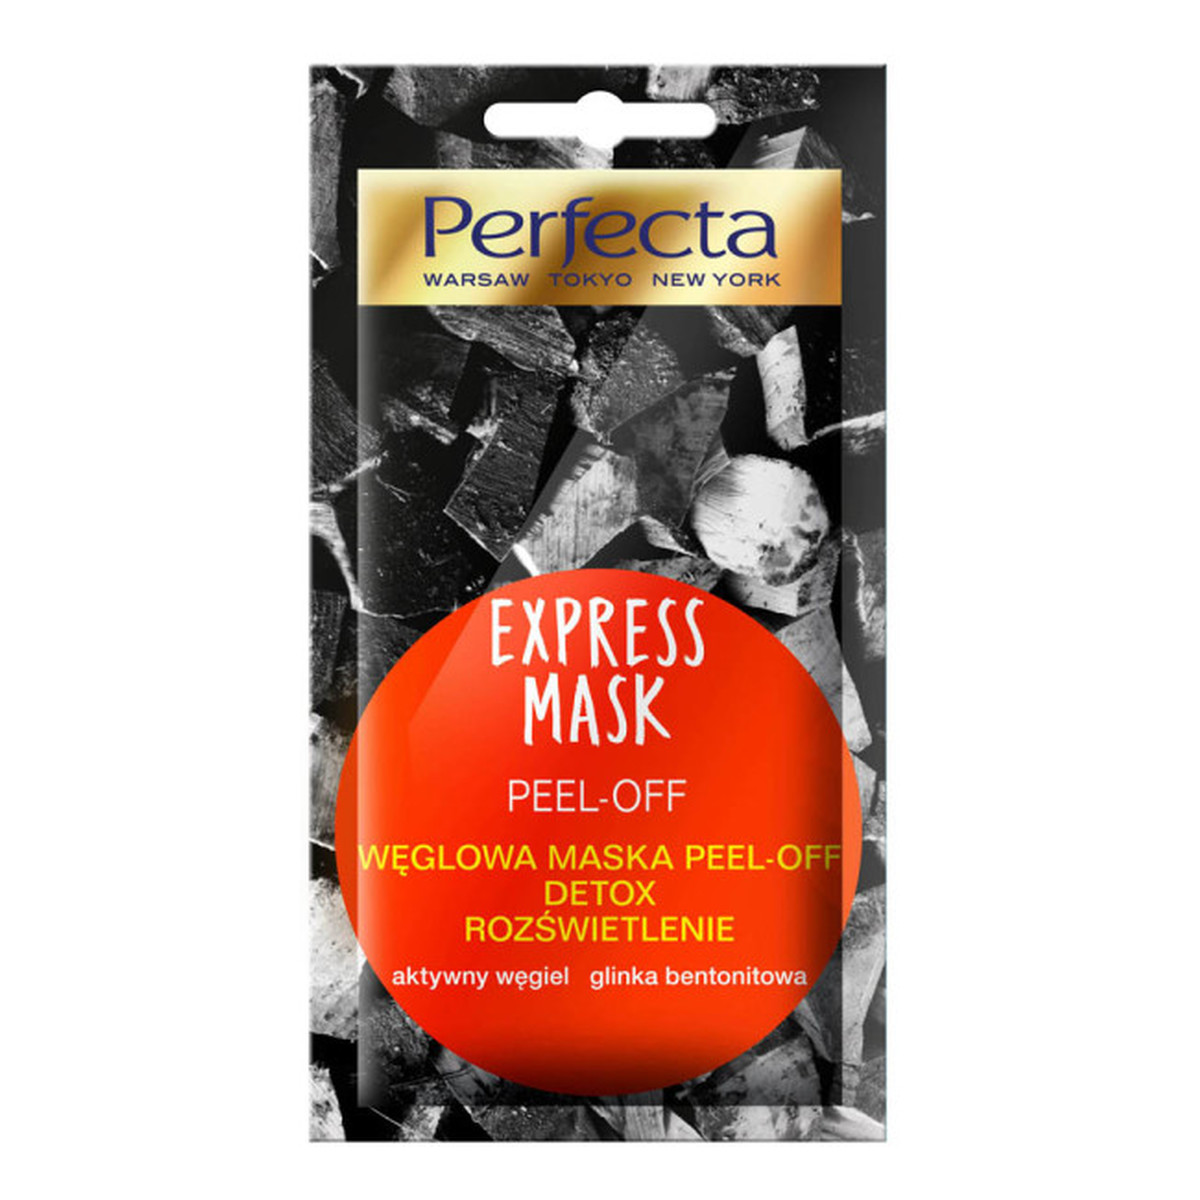 Perfecta Express Mask WĘGLOWA MASKA do twarzy PEEL-OFF DETOX ROZŚWIETLENIE 10ml